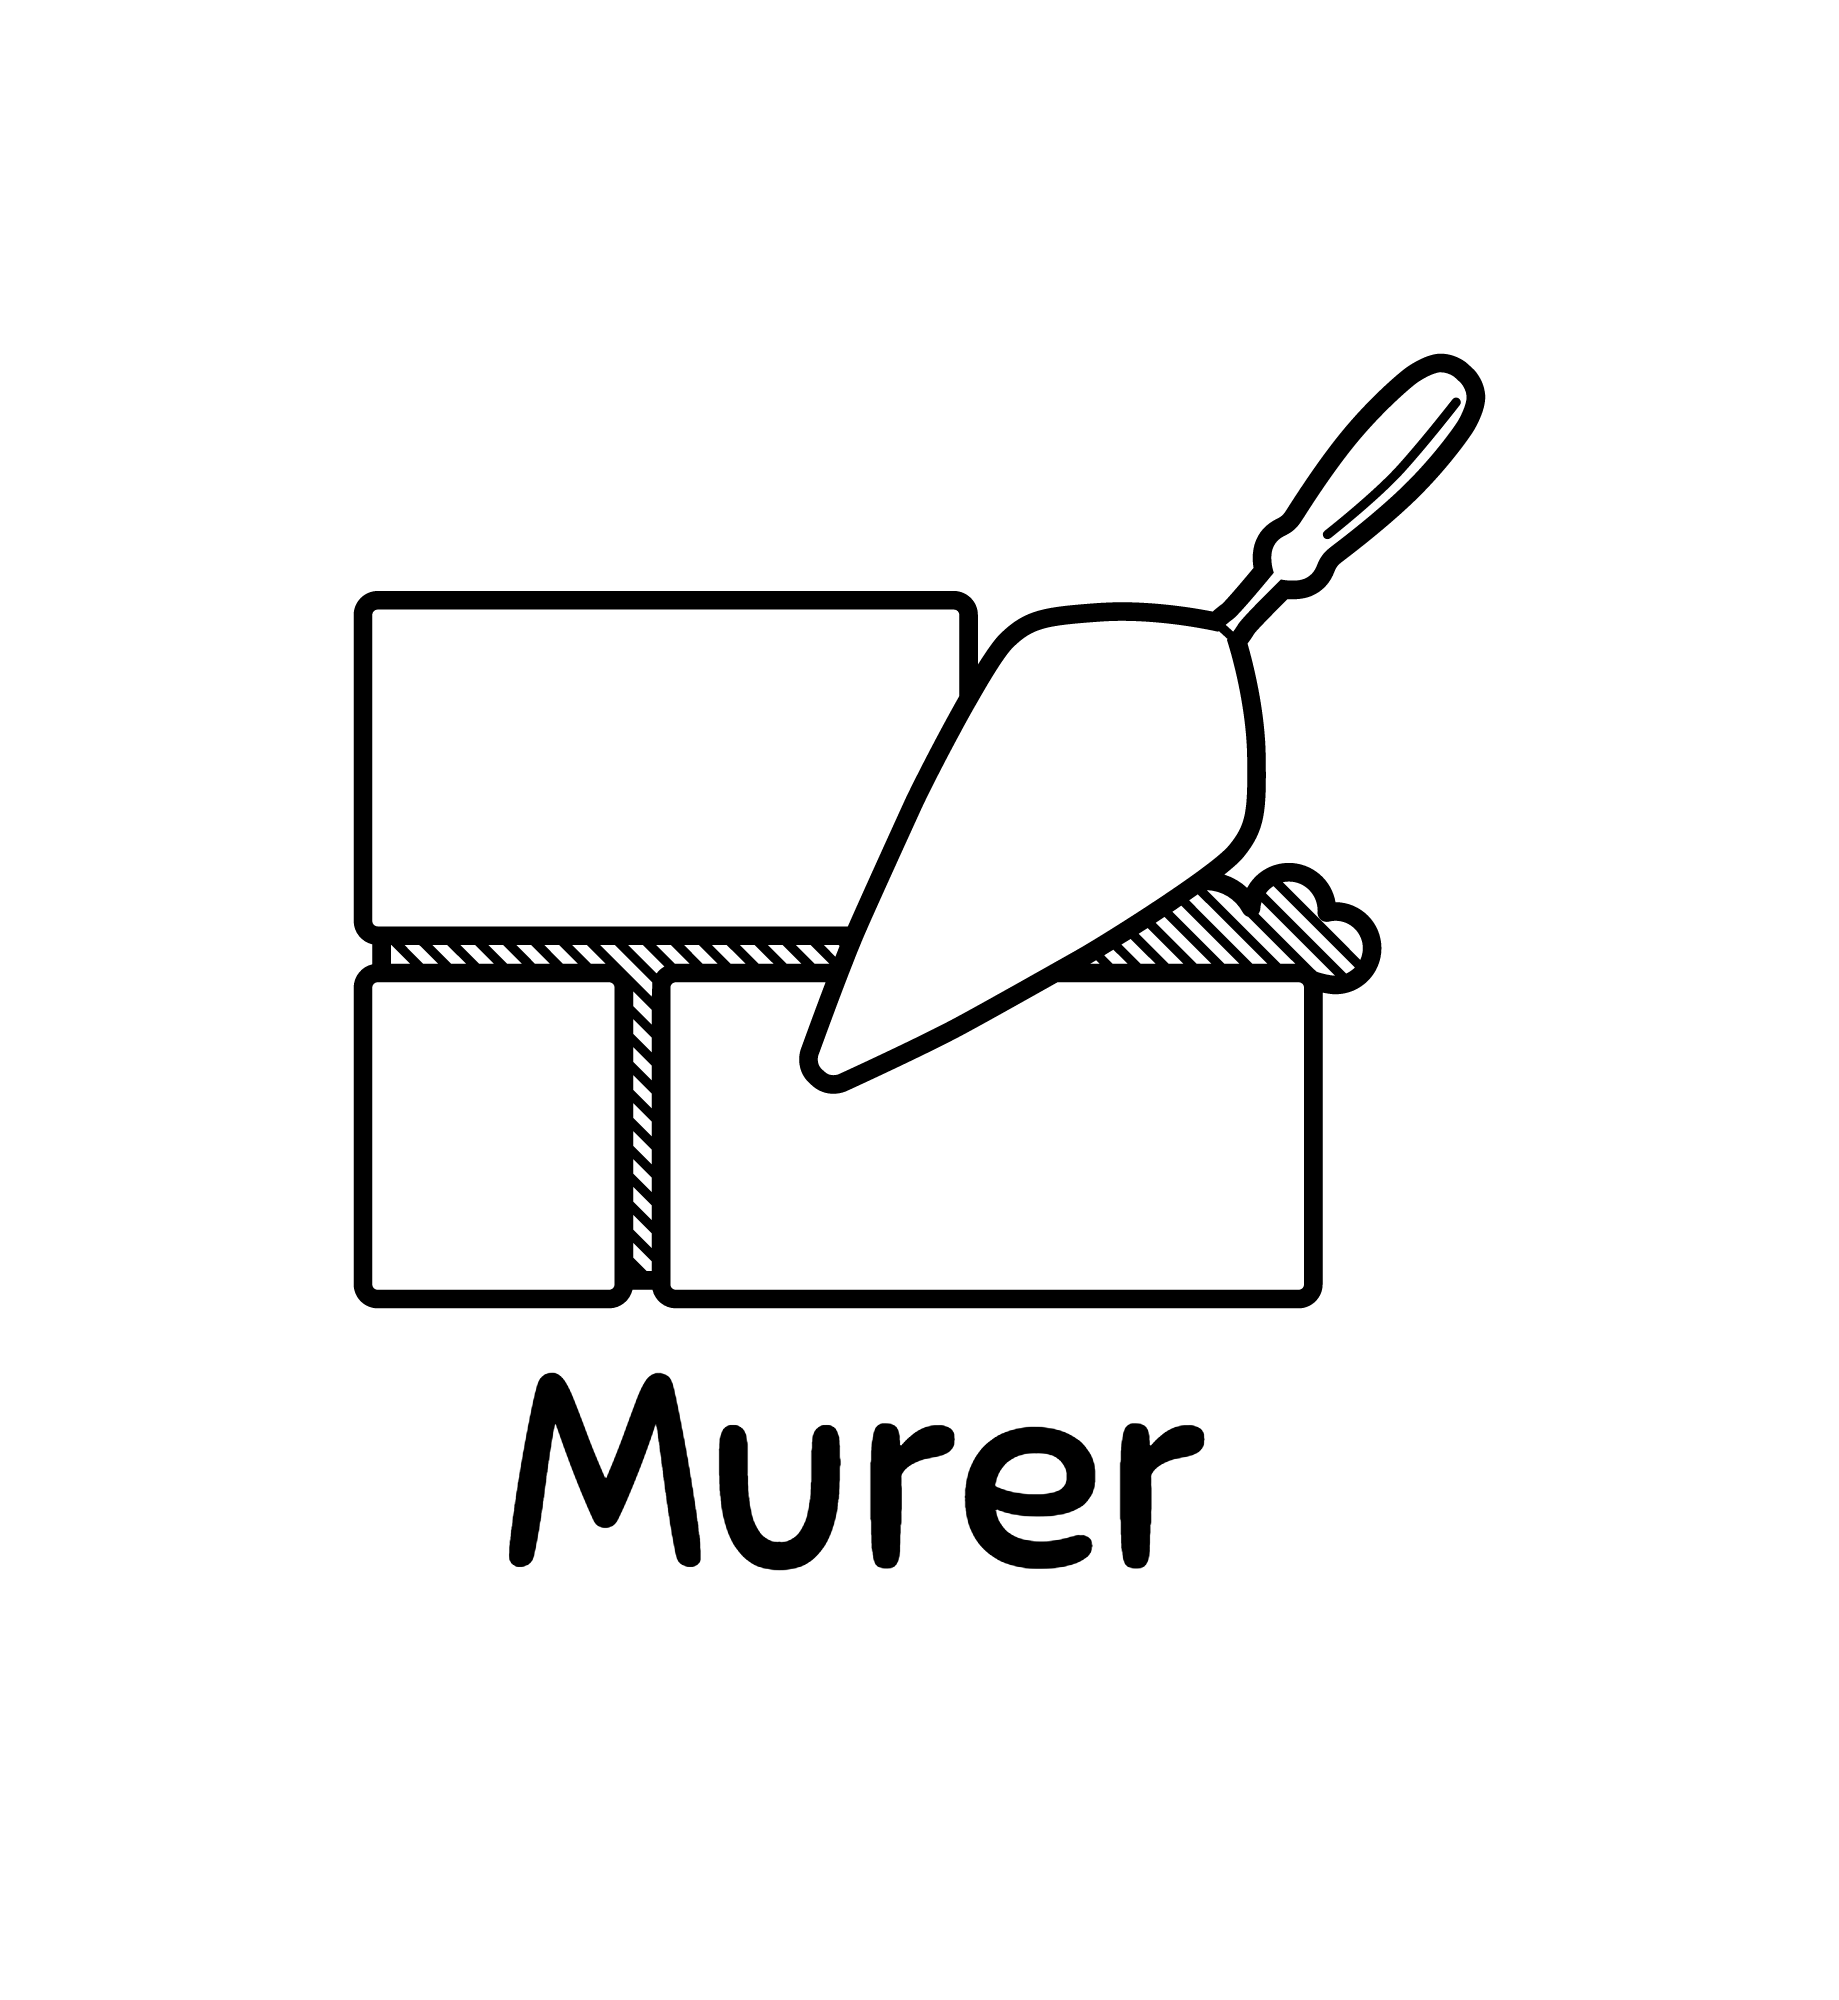 Murer-logo-black.png